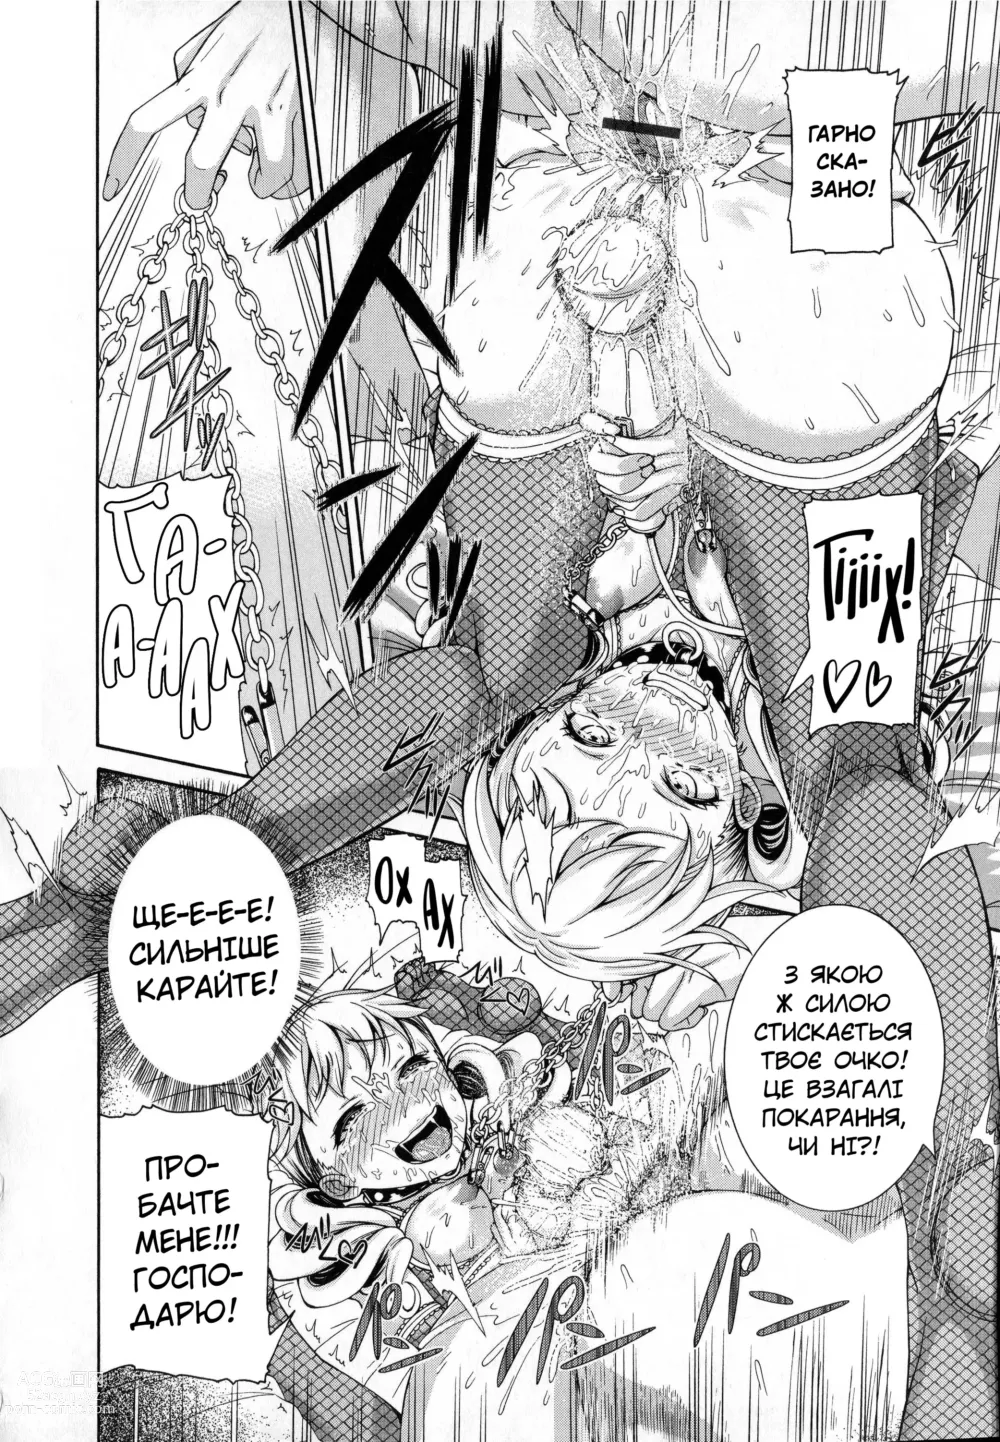 Page 21 of manga Скажене лікування